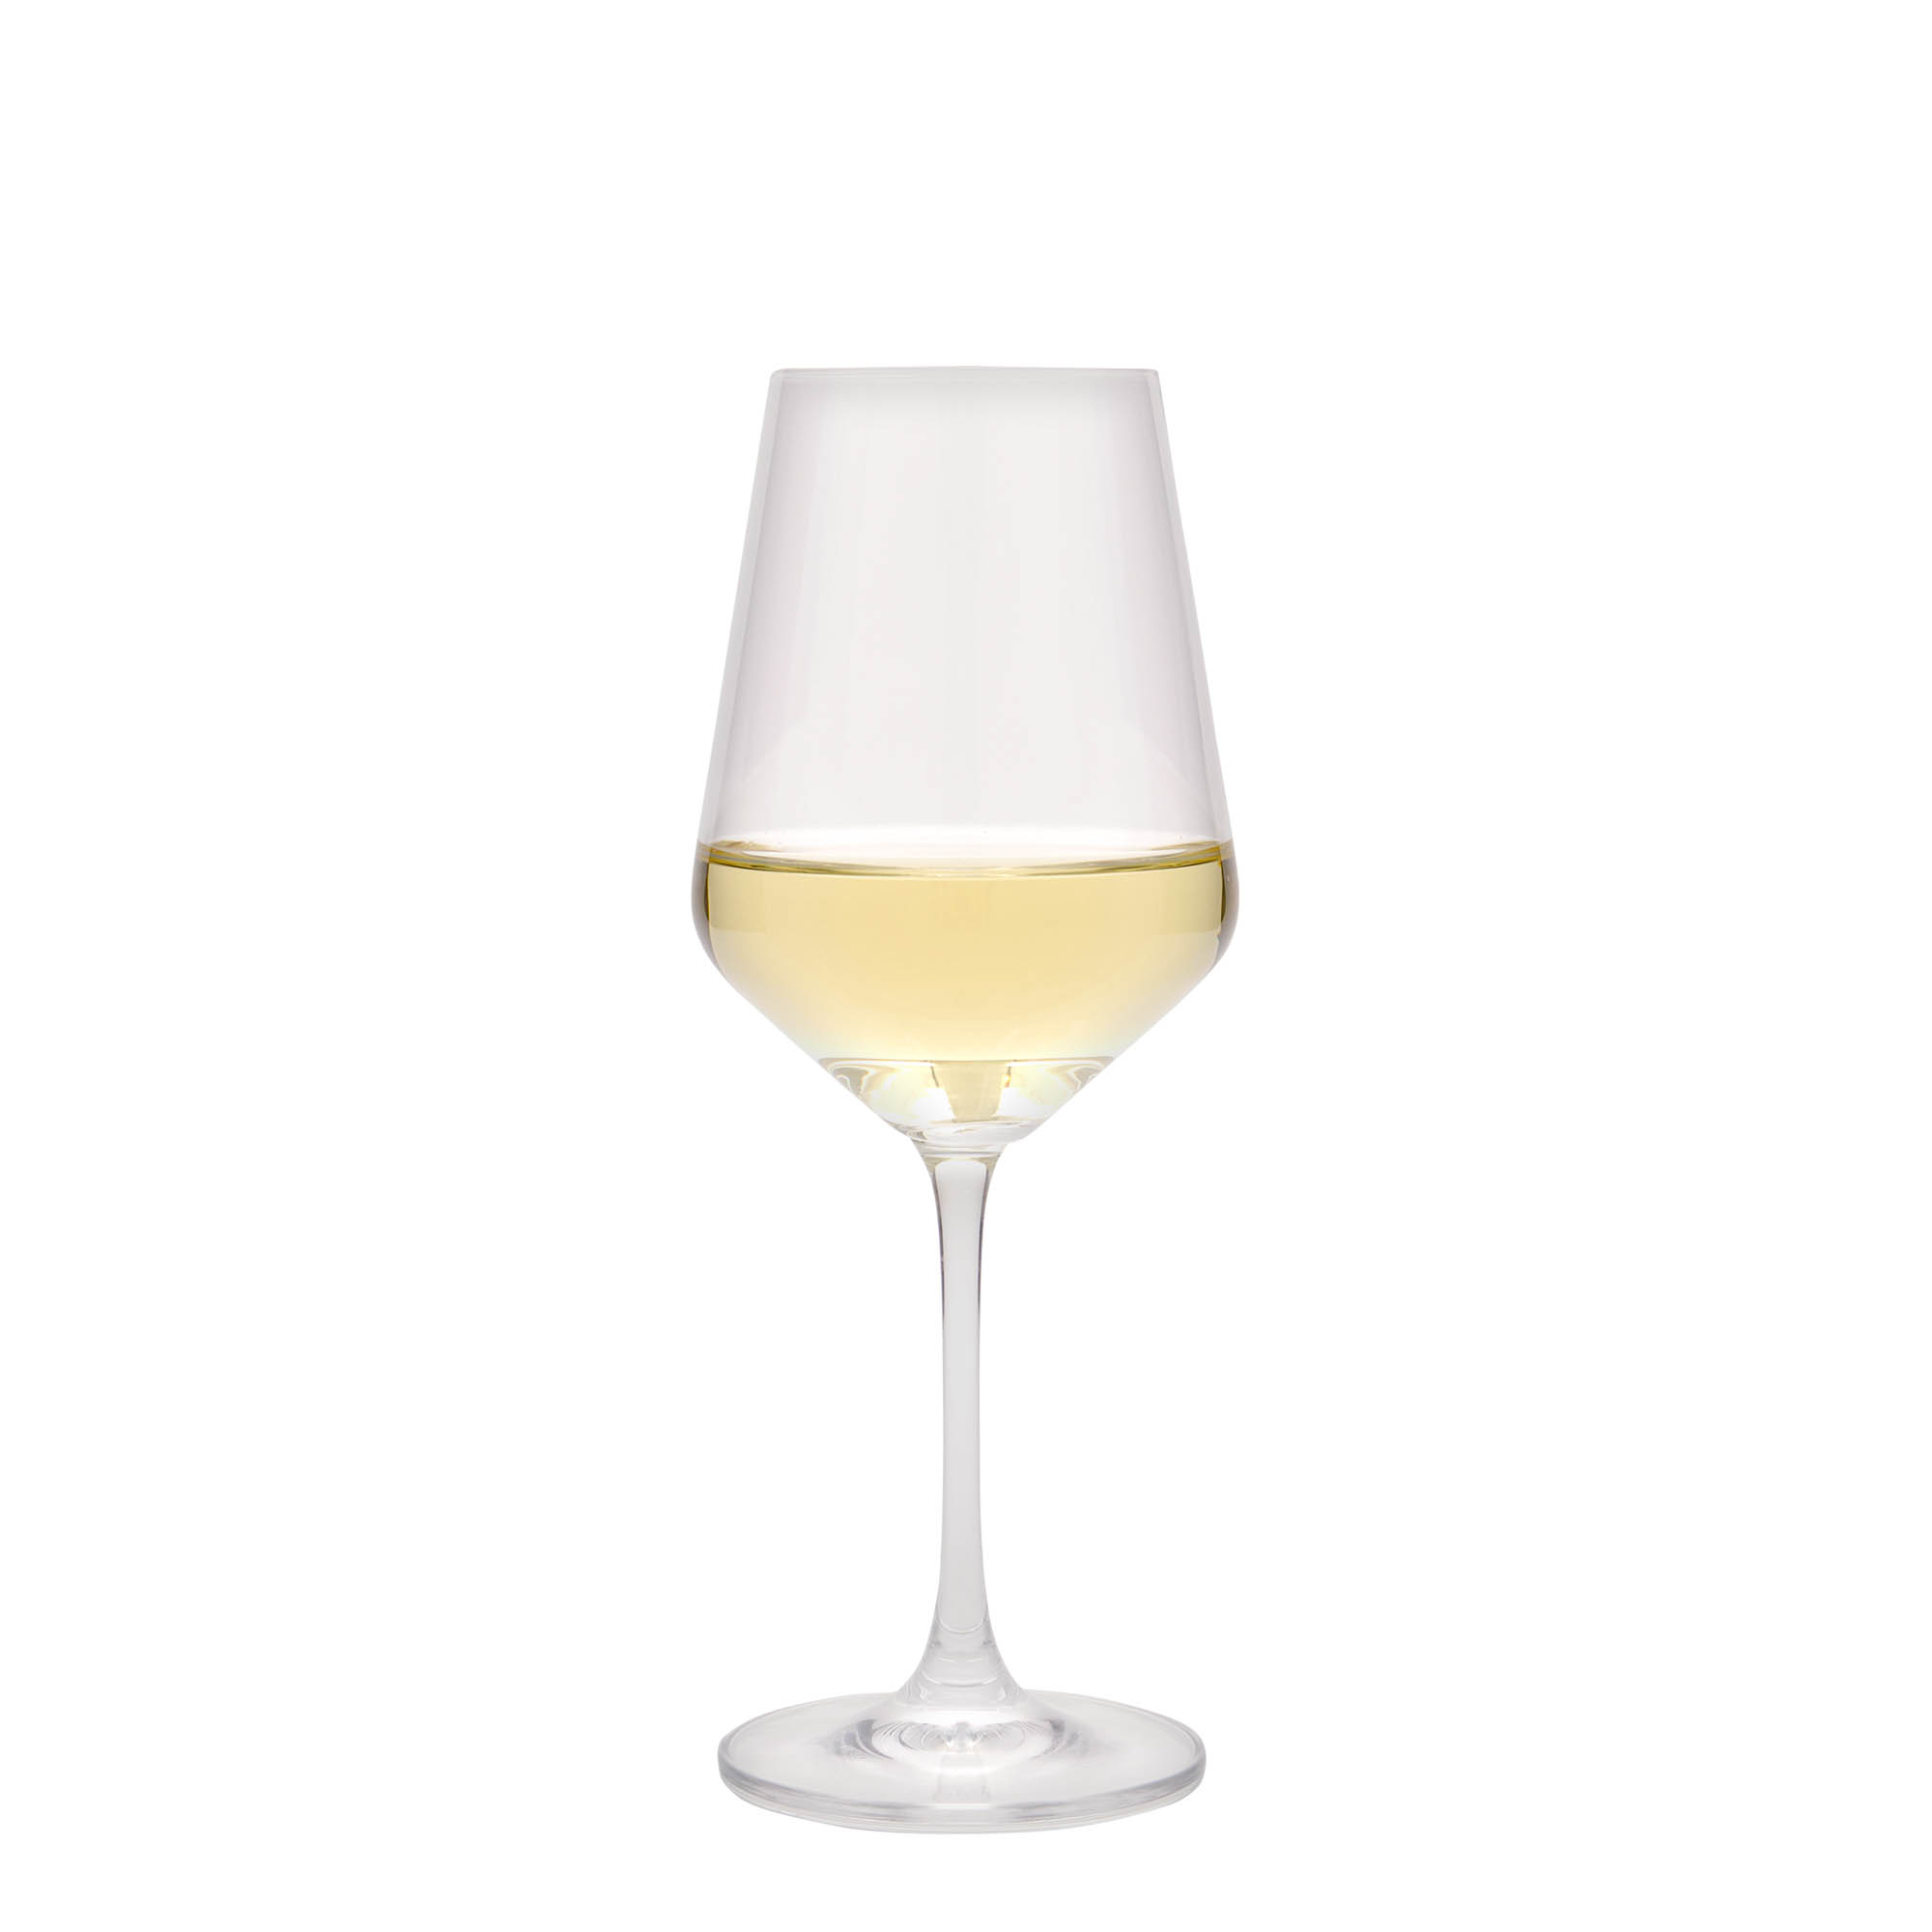 350 ml wine glass 'Harmony', glass